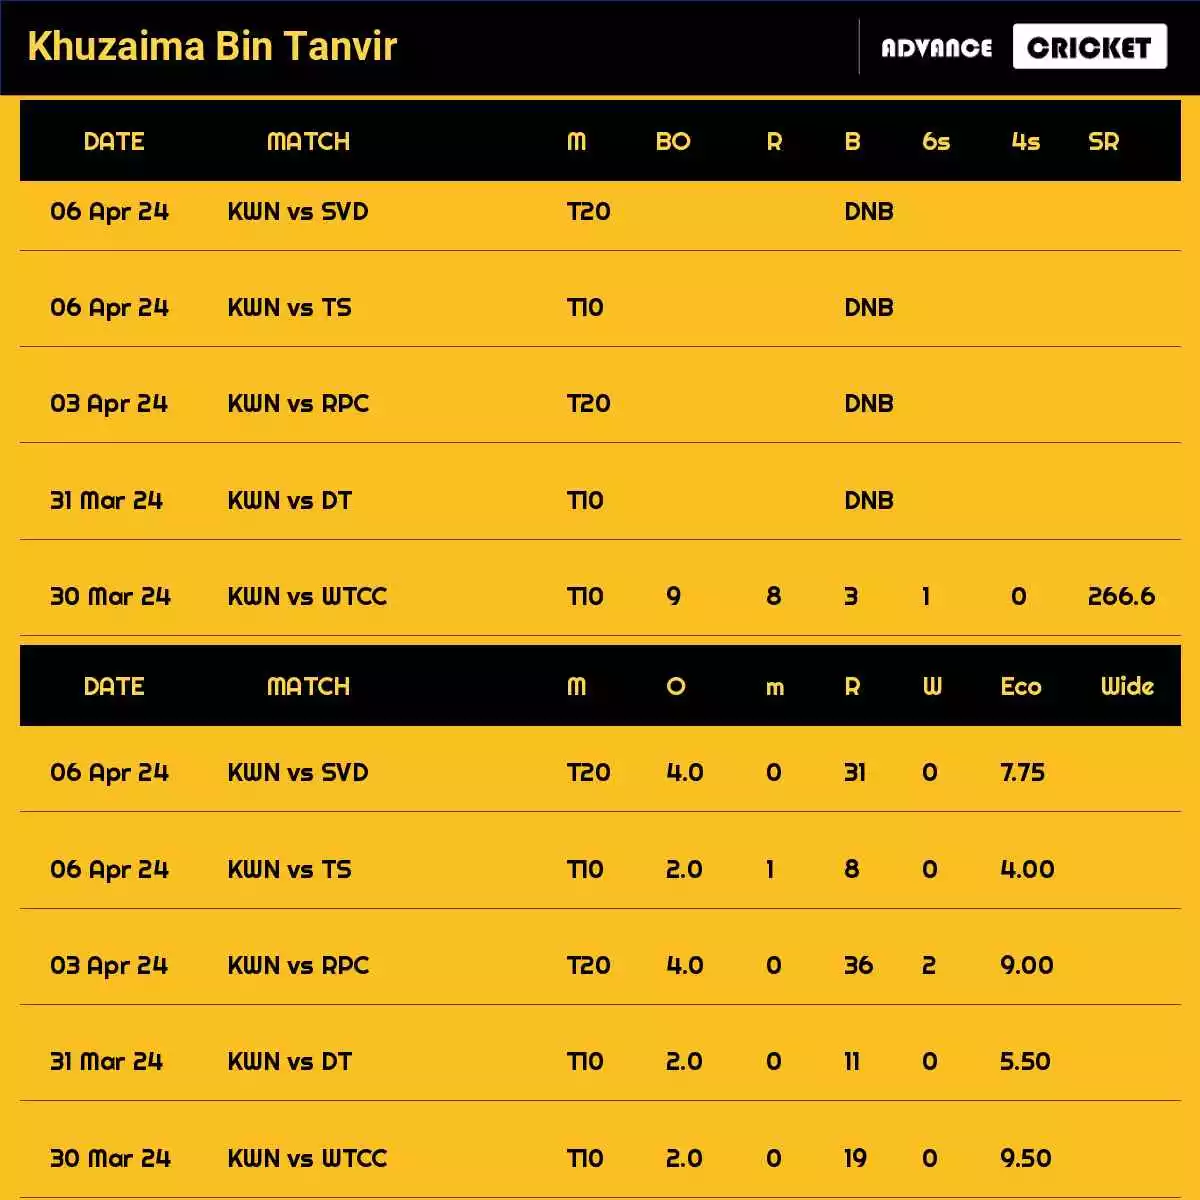 Khuzaima Bin Tanvir Recent Matches Details Date Wise